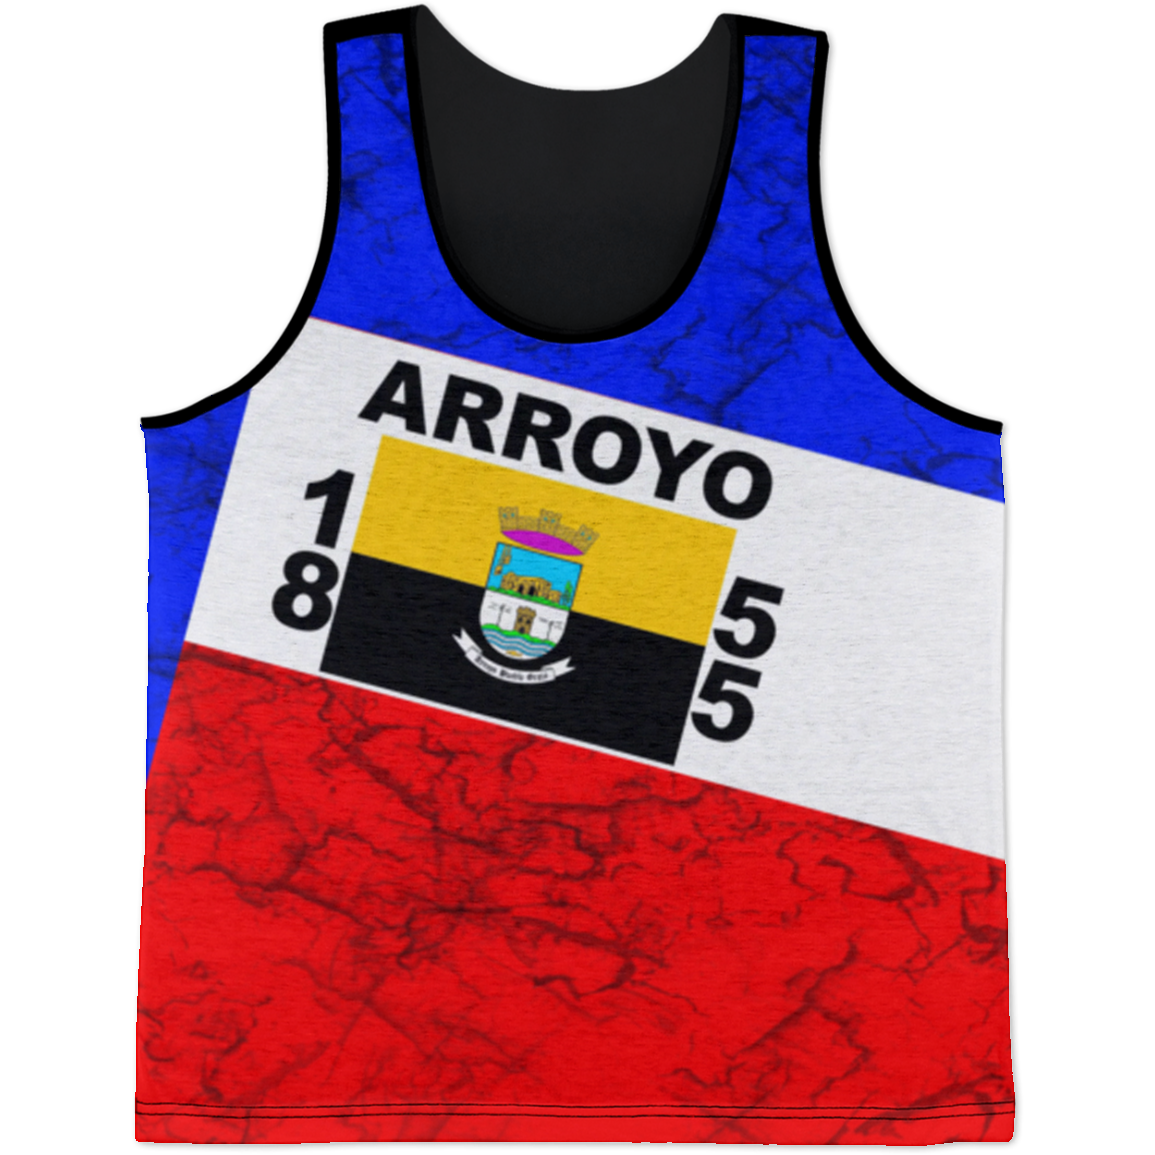 Arroyo Tank Top - Puerto Rican Pride